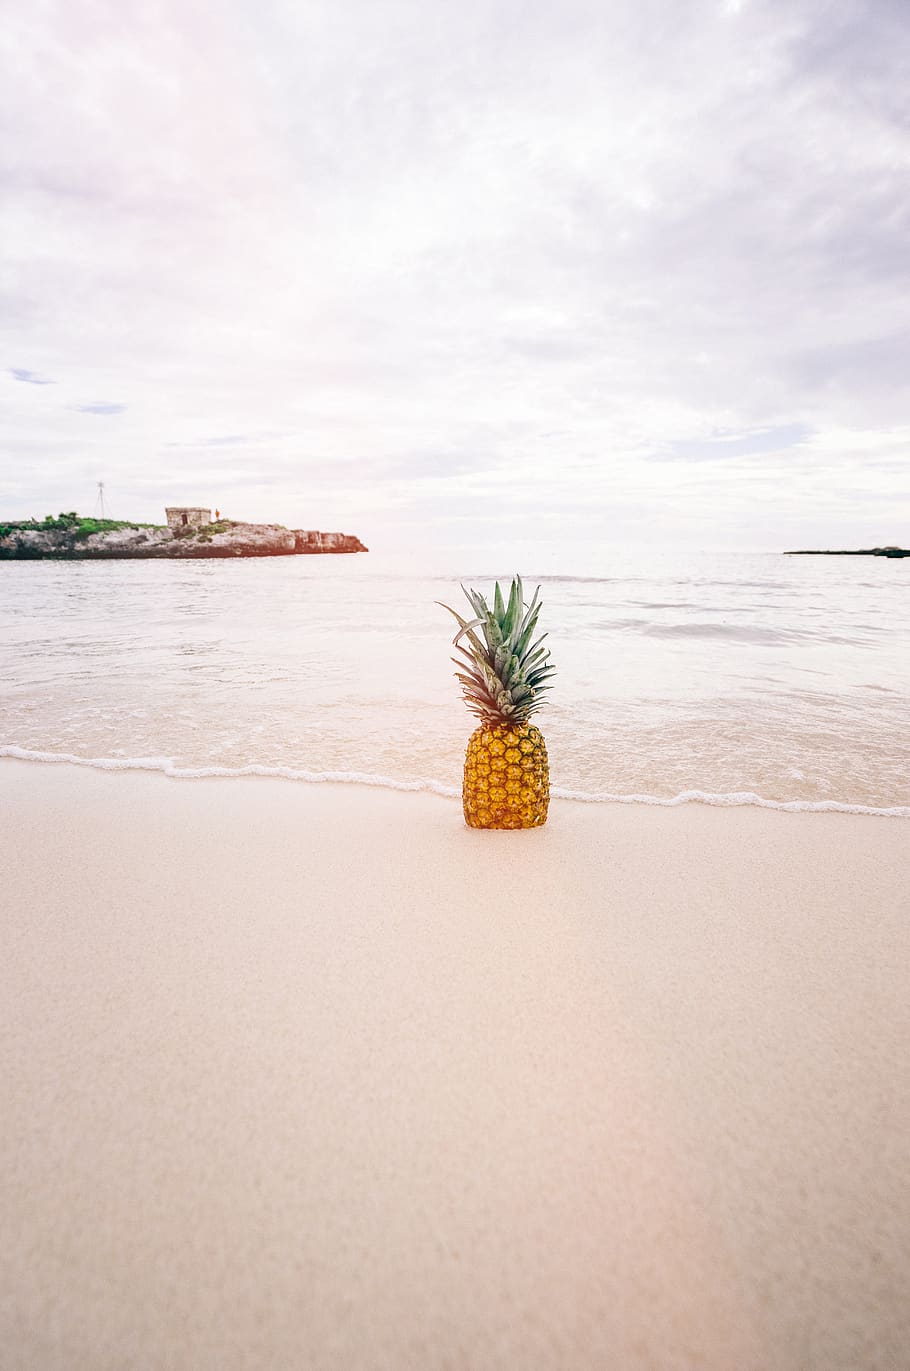 pineapple, dessert, appetizer, fruit, juice, crop, beach, ocean, sea, sand